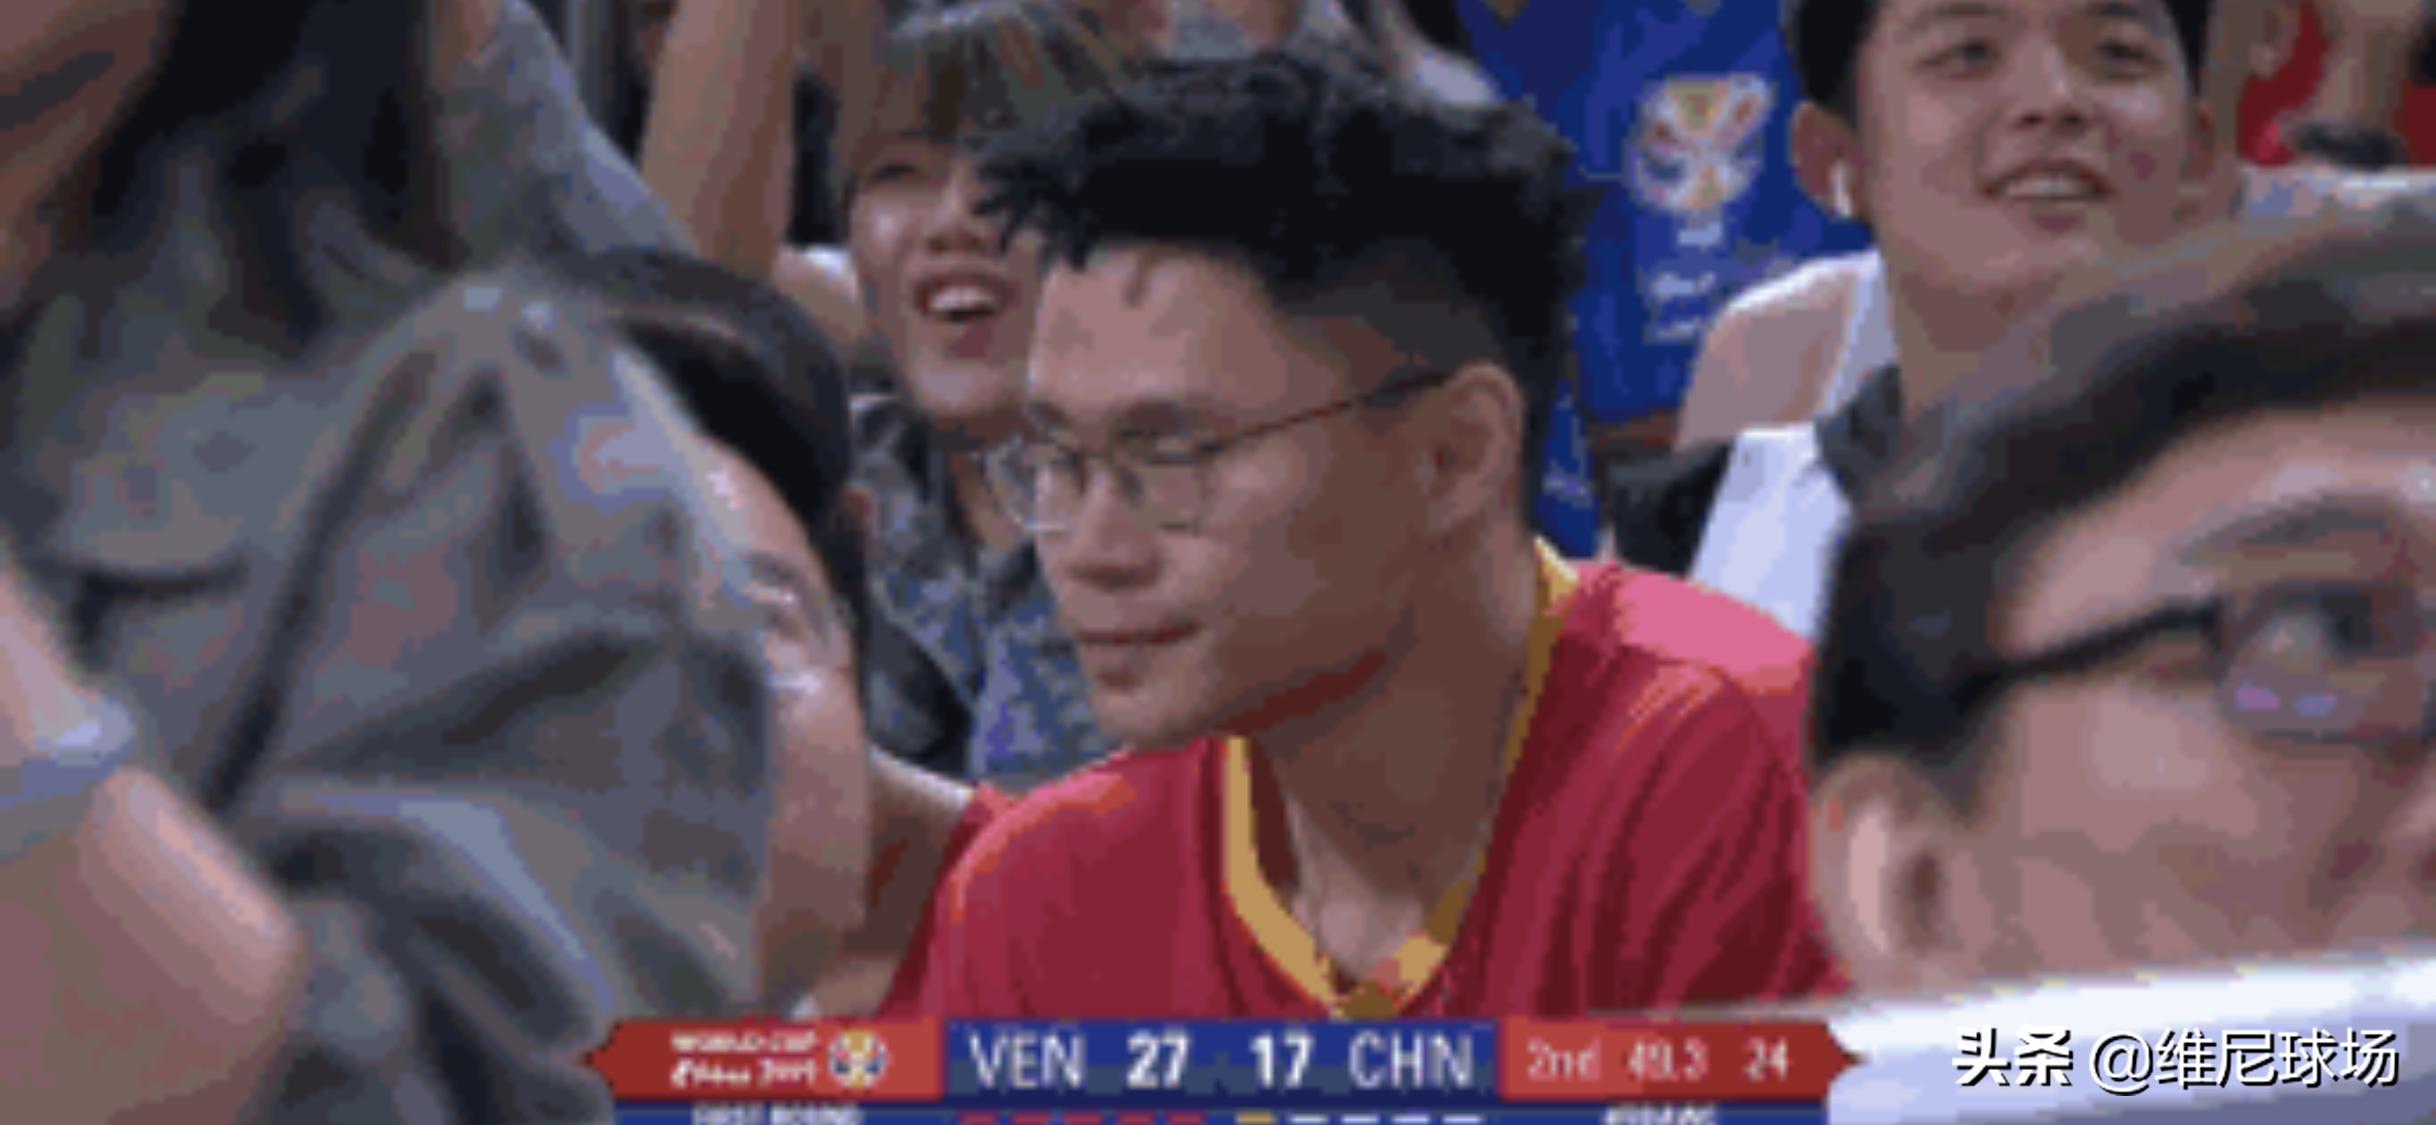 吴悠有没有资格被称为中国街球王，为什么没有参加篮球综艺节目